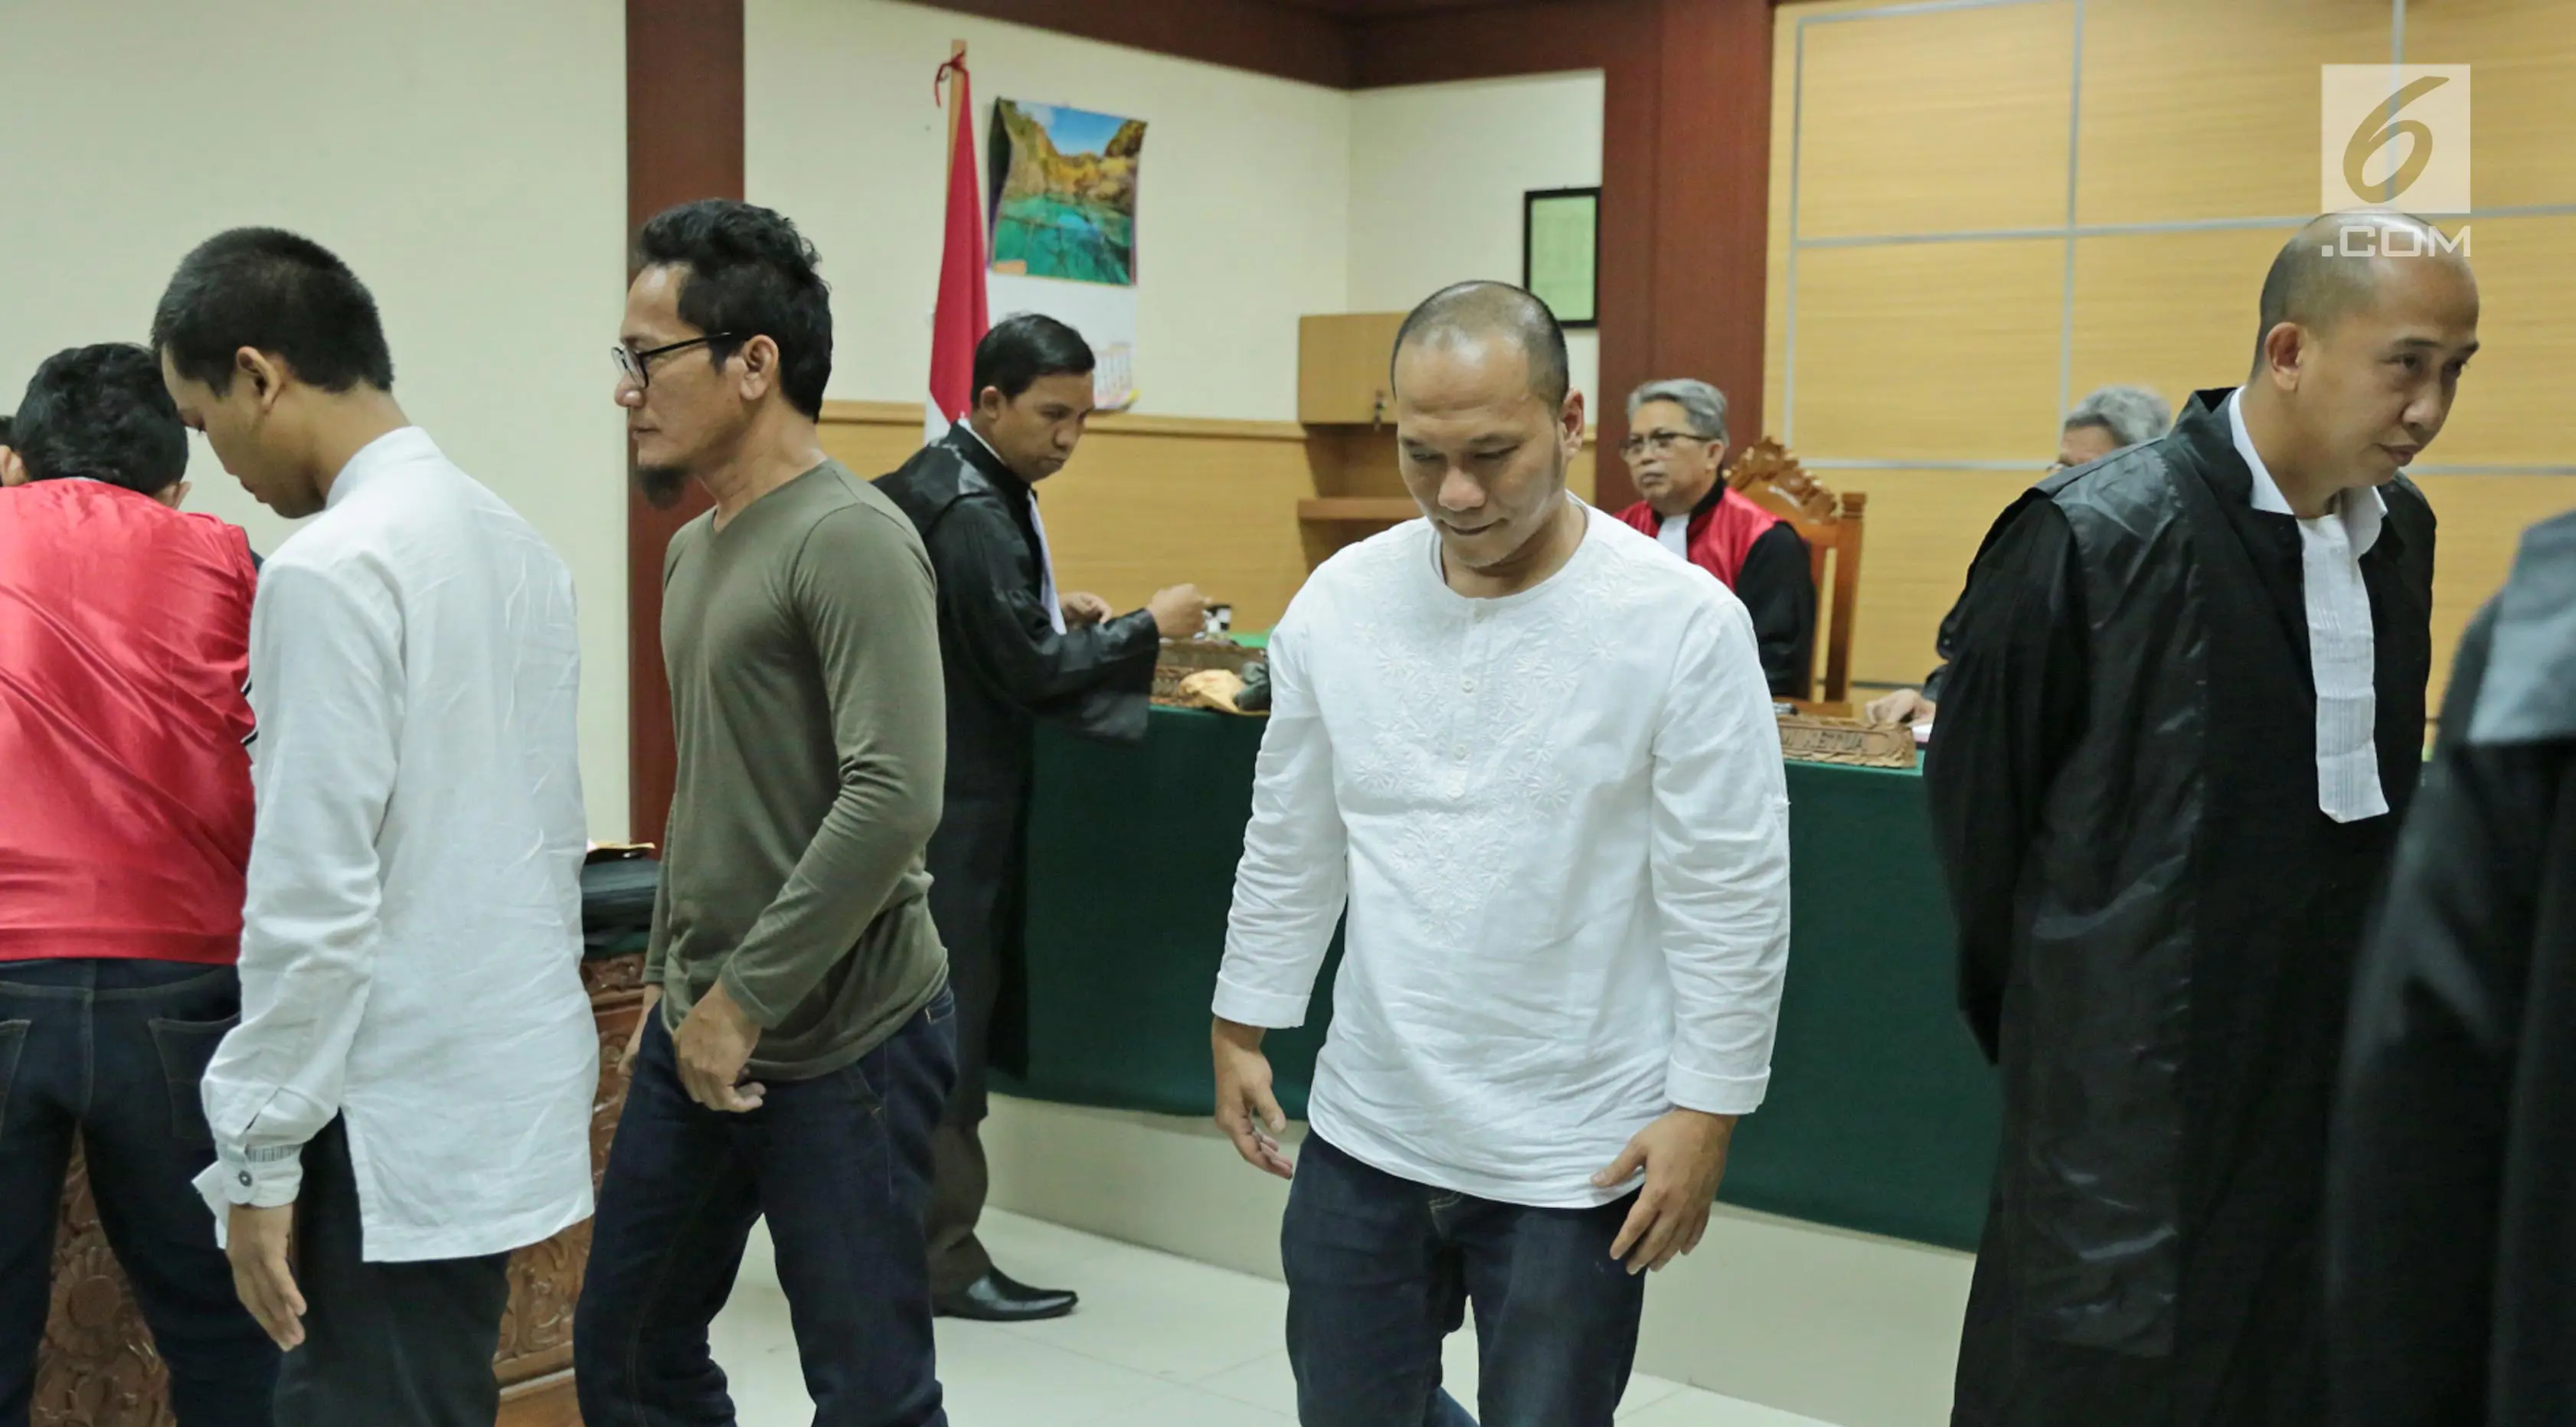 Rapper Iwa K meninggalkan ruangan usai menjalani sidang perdana di Pengadilan Negeri Tangerang, Rabu (6/9). Menurut kuasa hukumnya, Iwa K dinyatakan sebagai pengguna ringan dan direkomendasikan untuk direhabilitasi. (Liputan6.com/Pool)